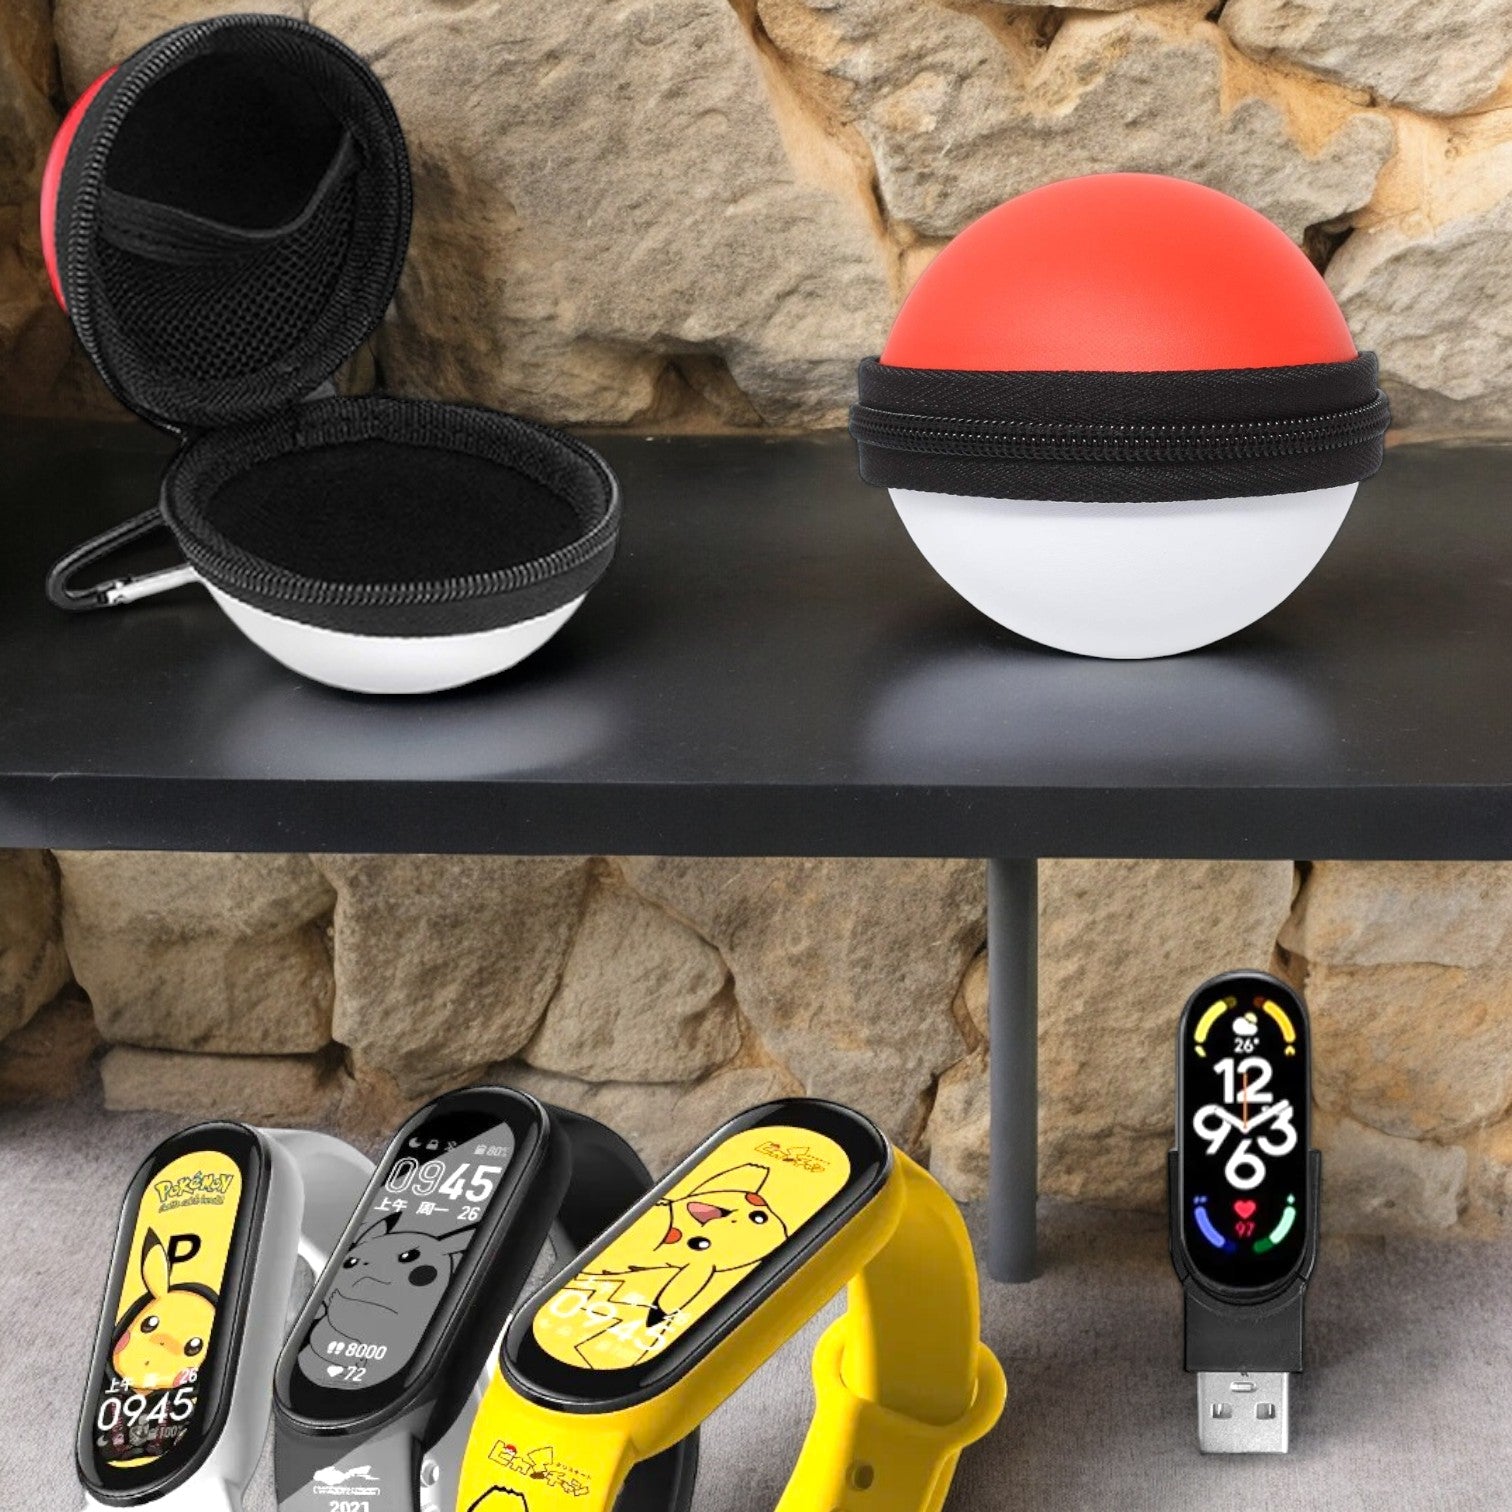 Pokémon Smart Watch